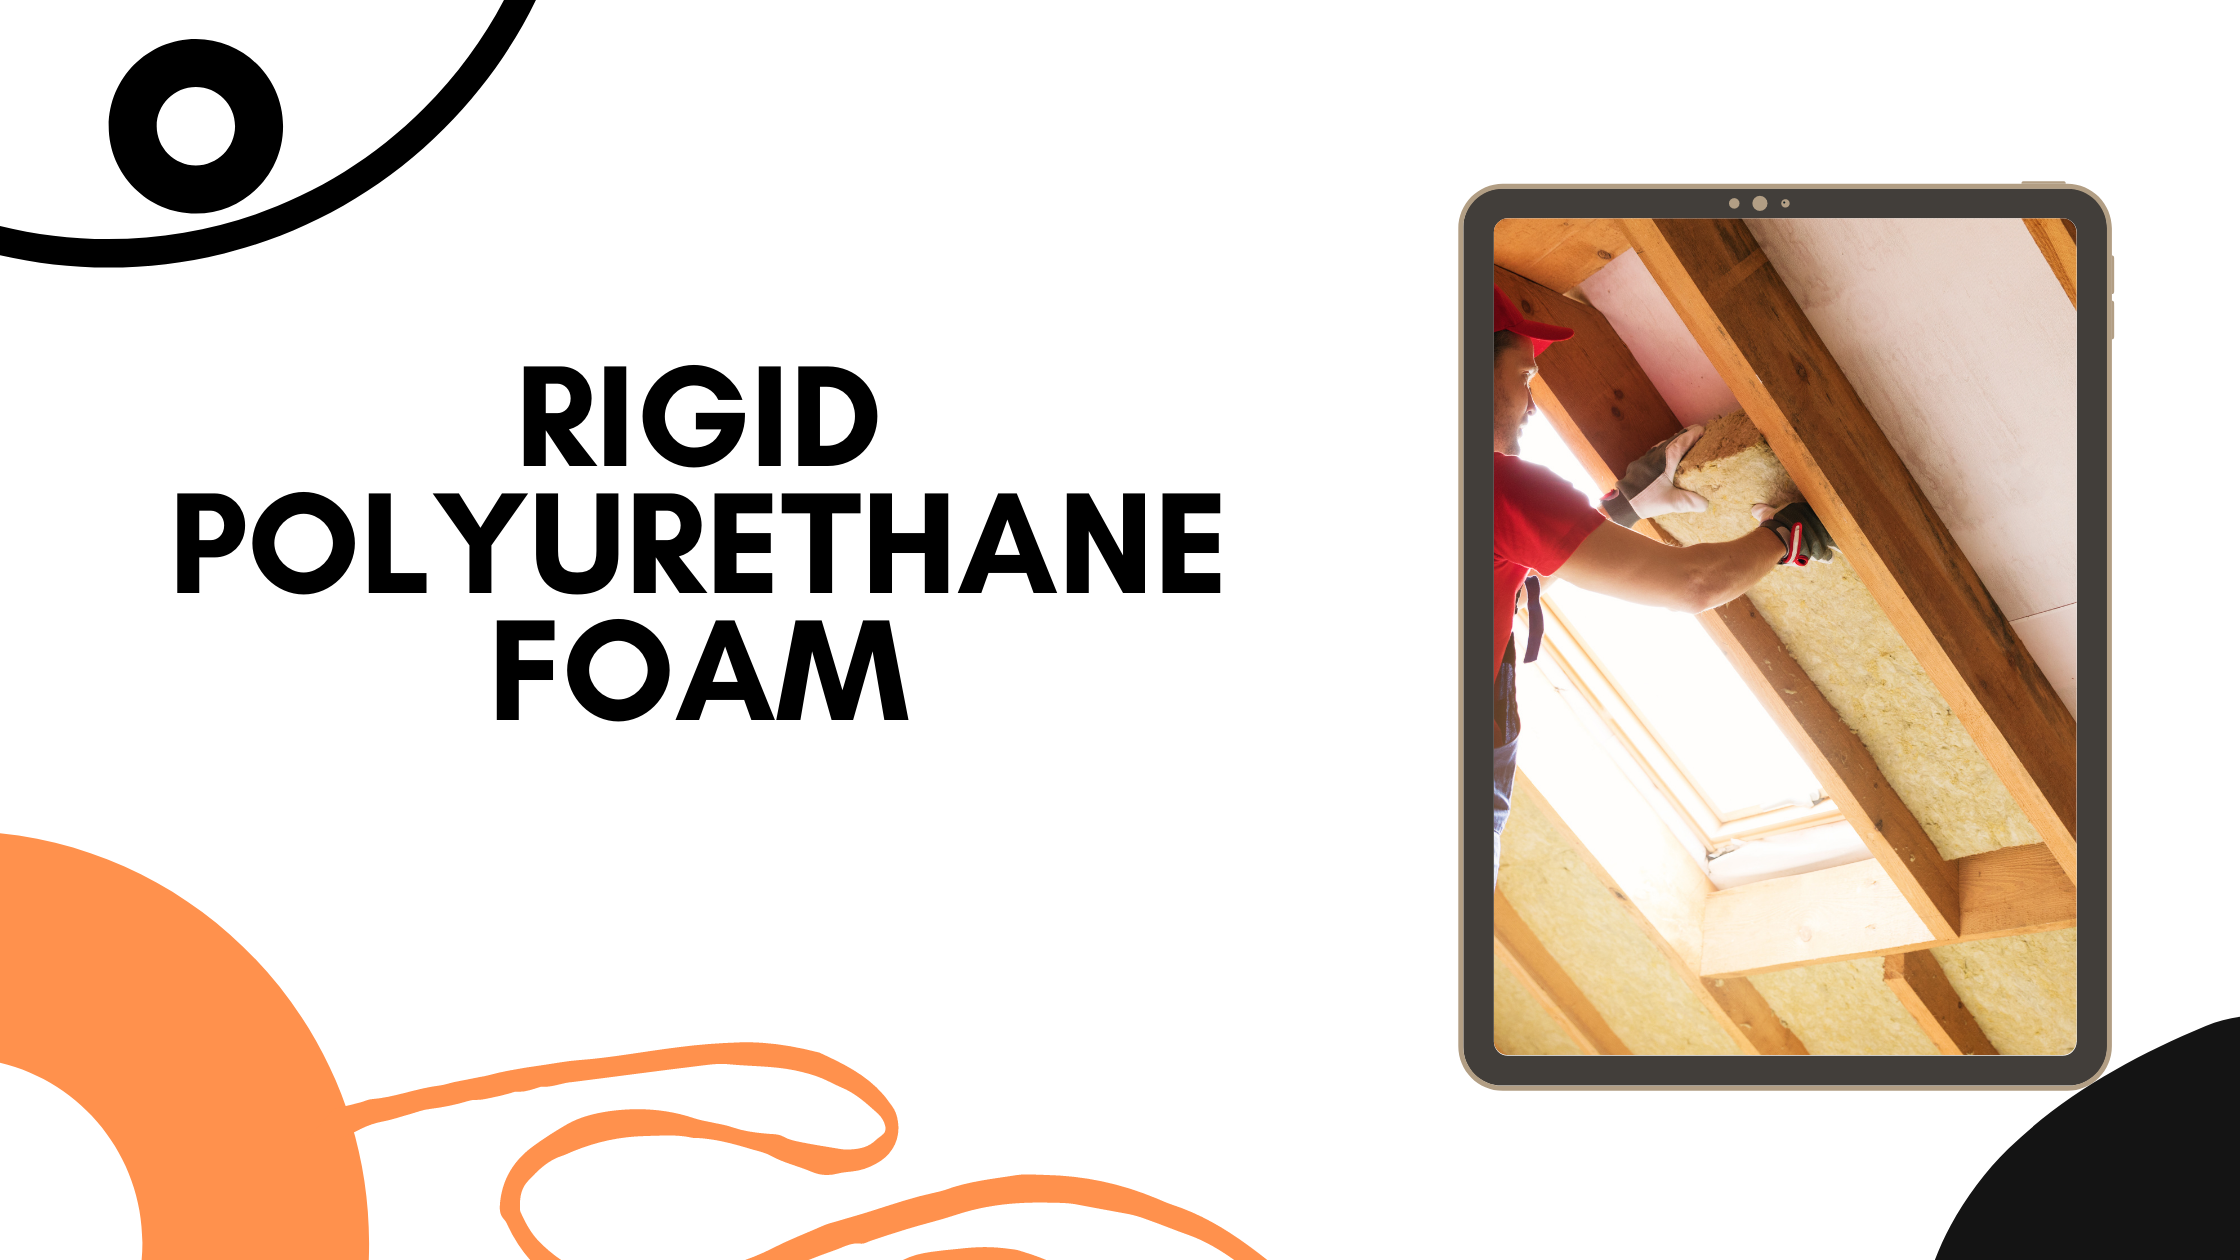 About Rigid Polyurethane Foam